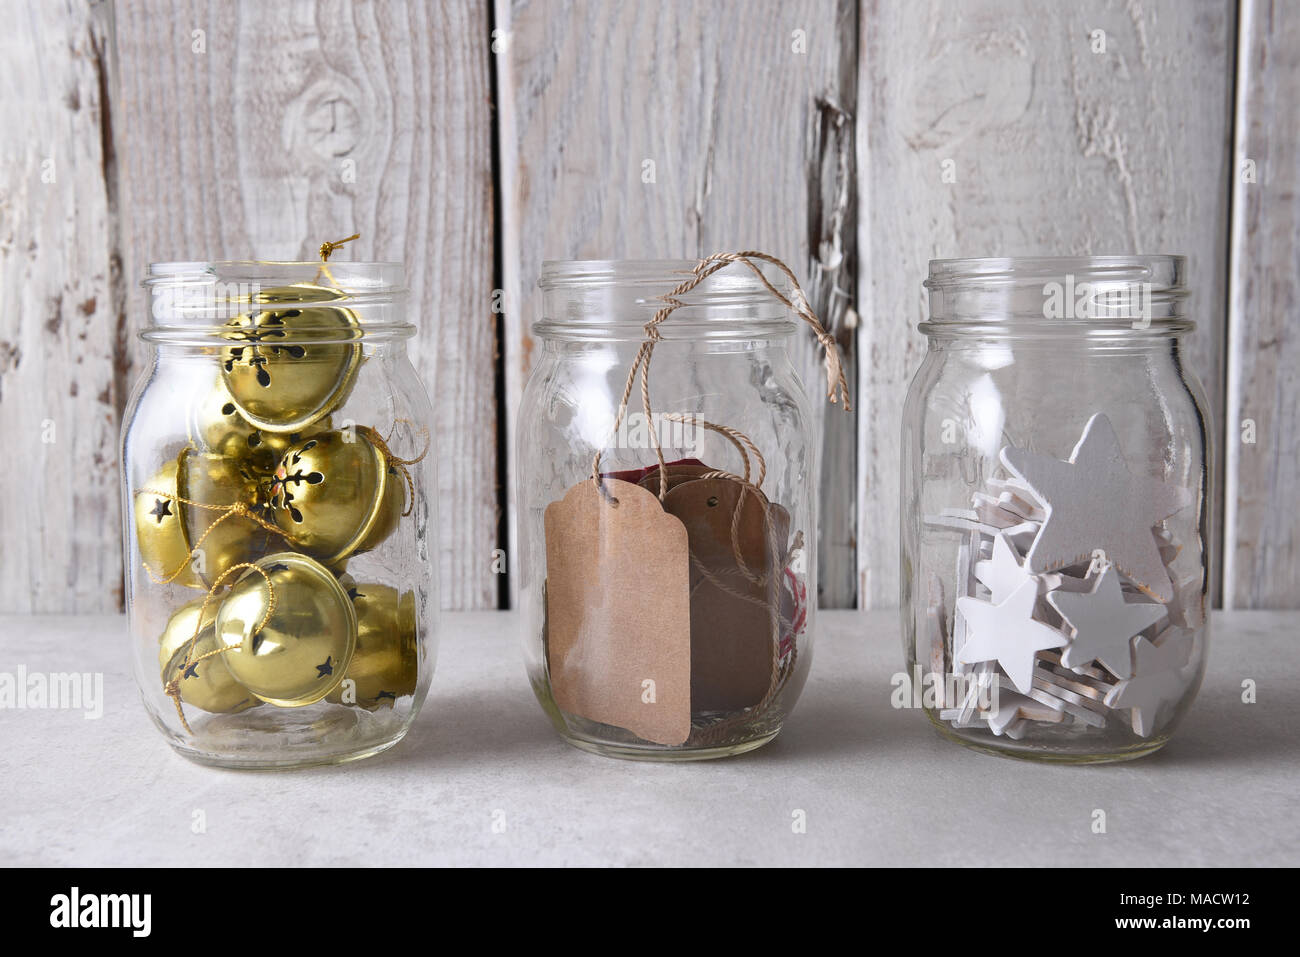 Weihnachtsgeschenk Verpackung liefert. Drei Maurergläser mit Geschenkanhänger, Holz Sterne, und Schlittenglöckchen gegen eine weiße Wand. Stockfoto